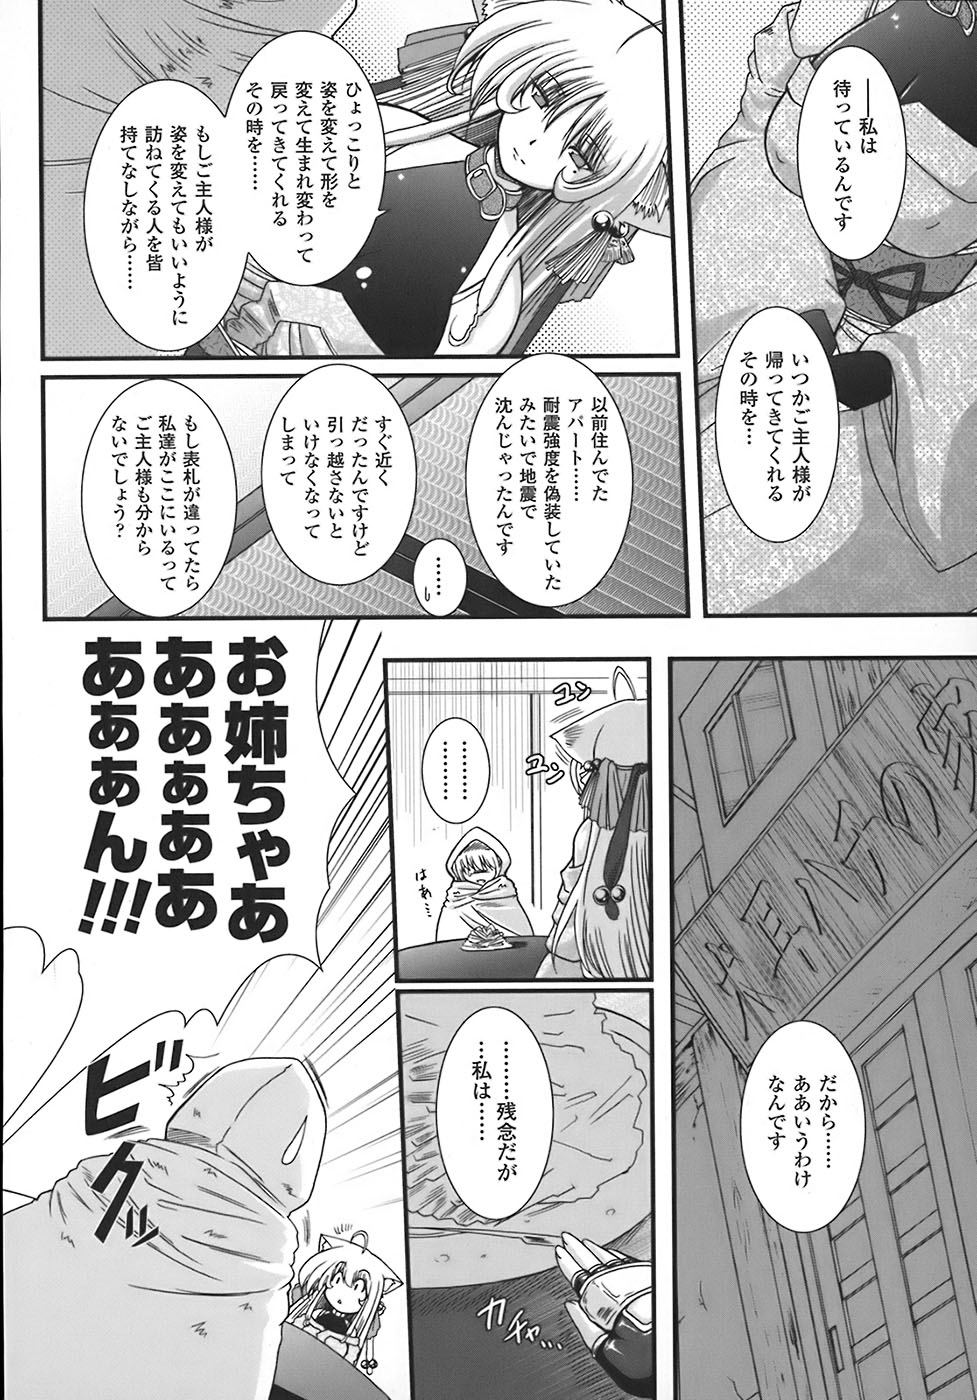 [Oohashi Takayuki] World is mine page 37 full